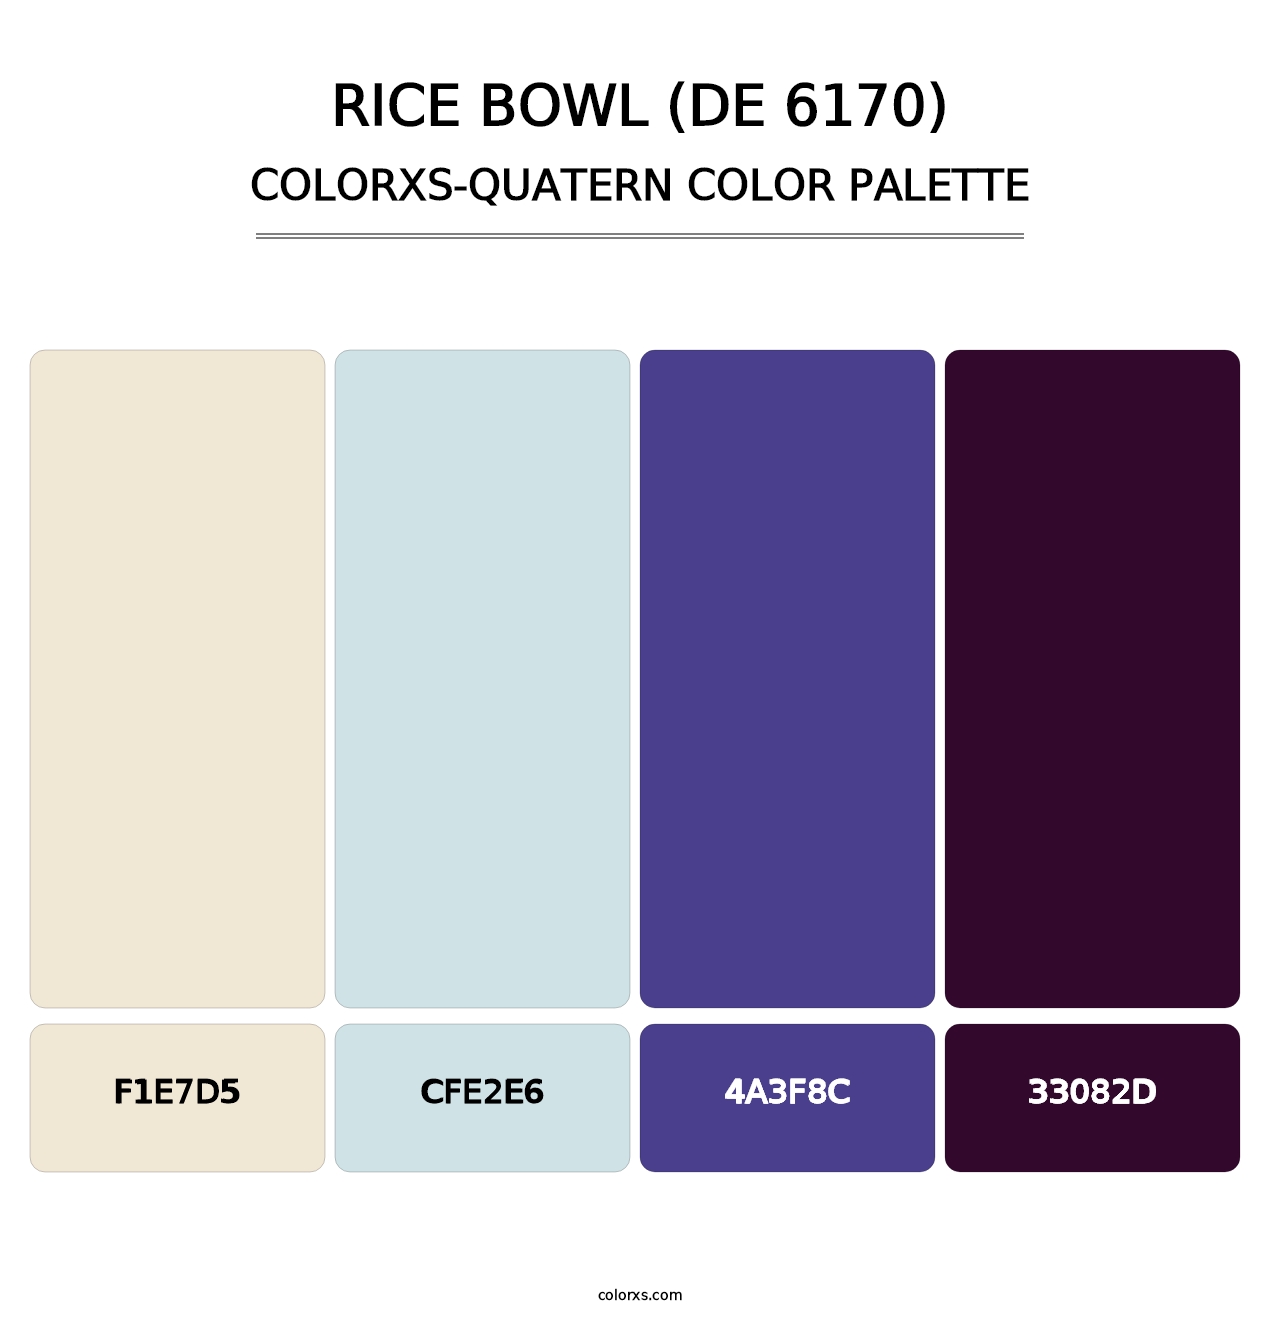 Rice Bowl (DE 6170) - Colorxs Quatern Palette